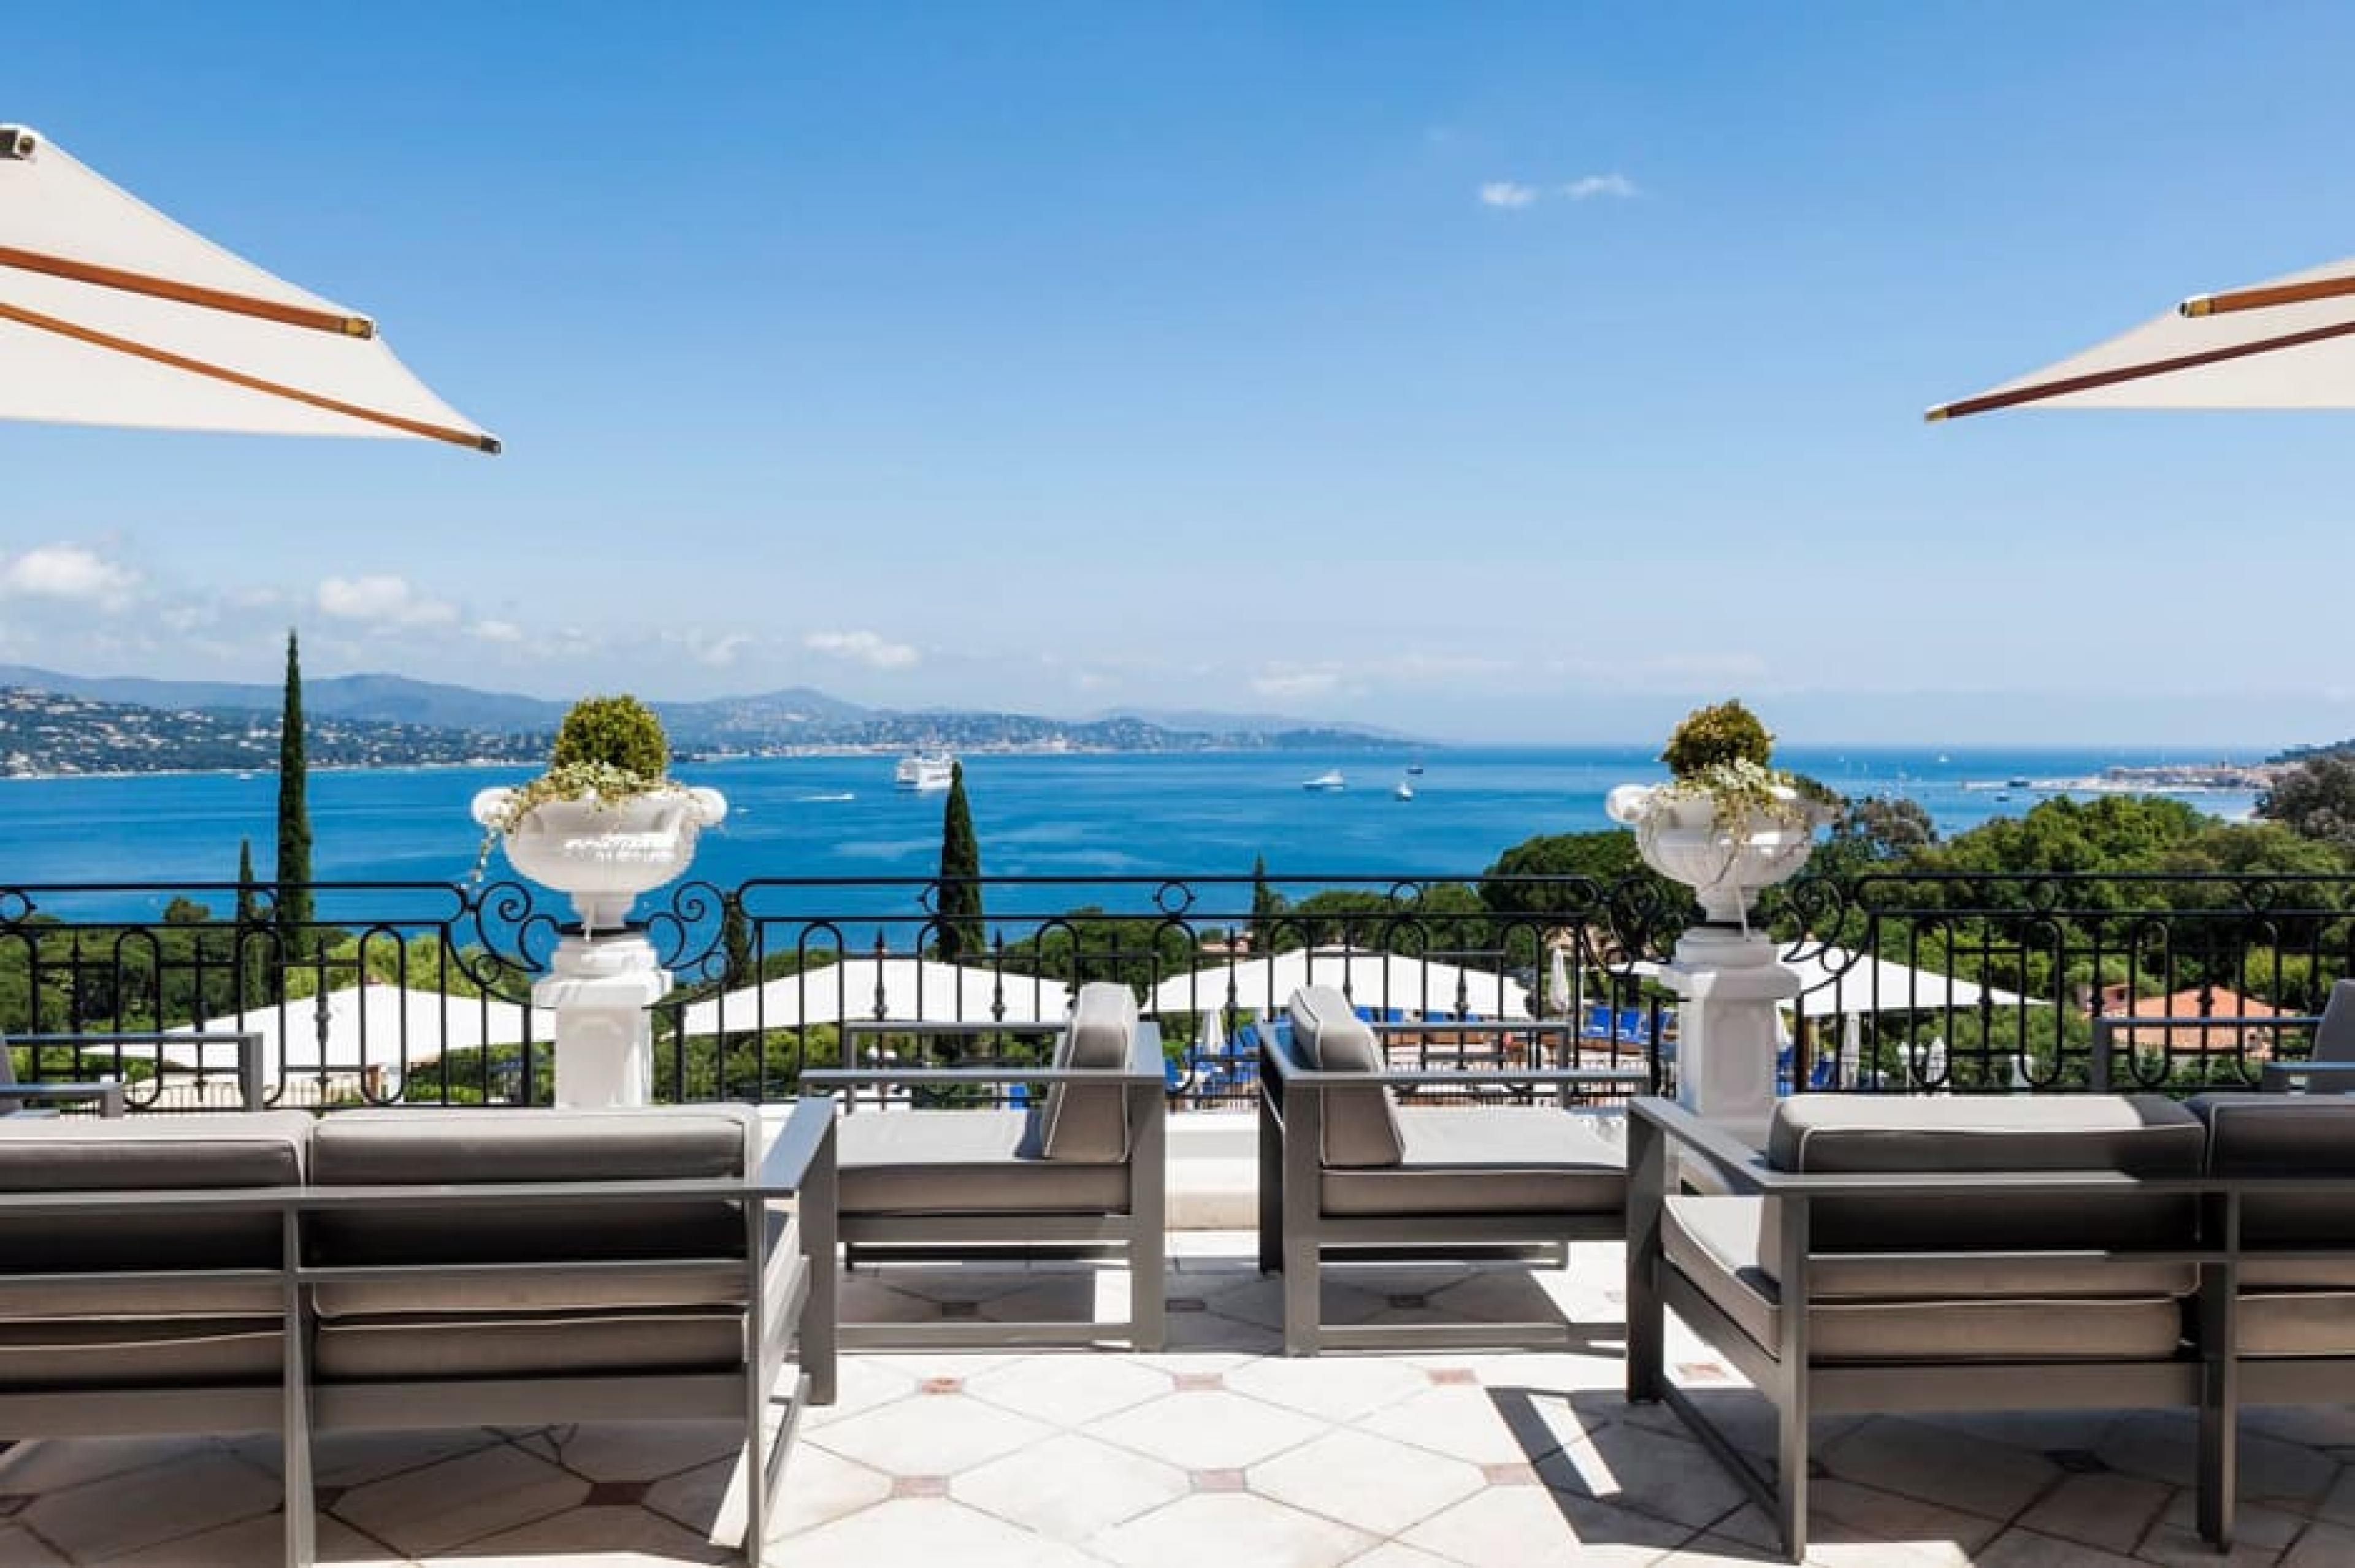 View from Terrace  - Villa Belrose, St. Tropez, France